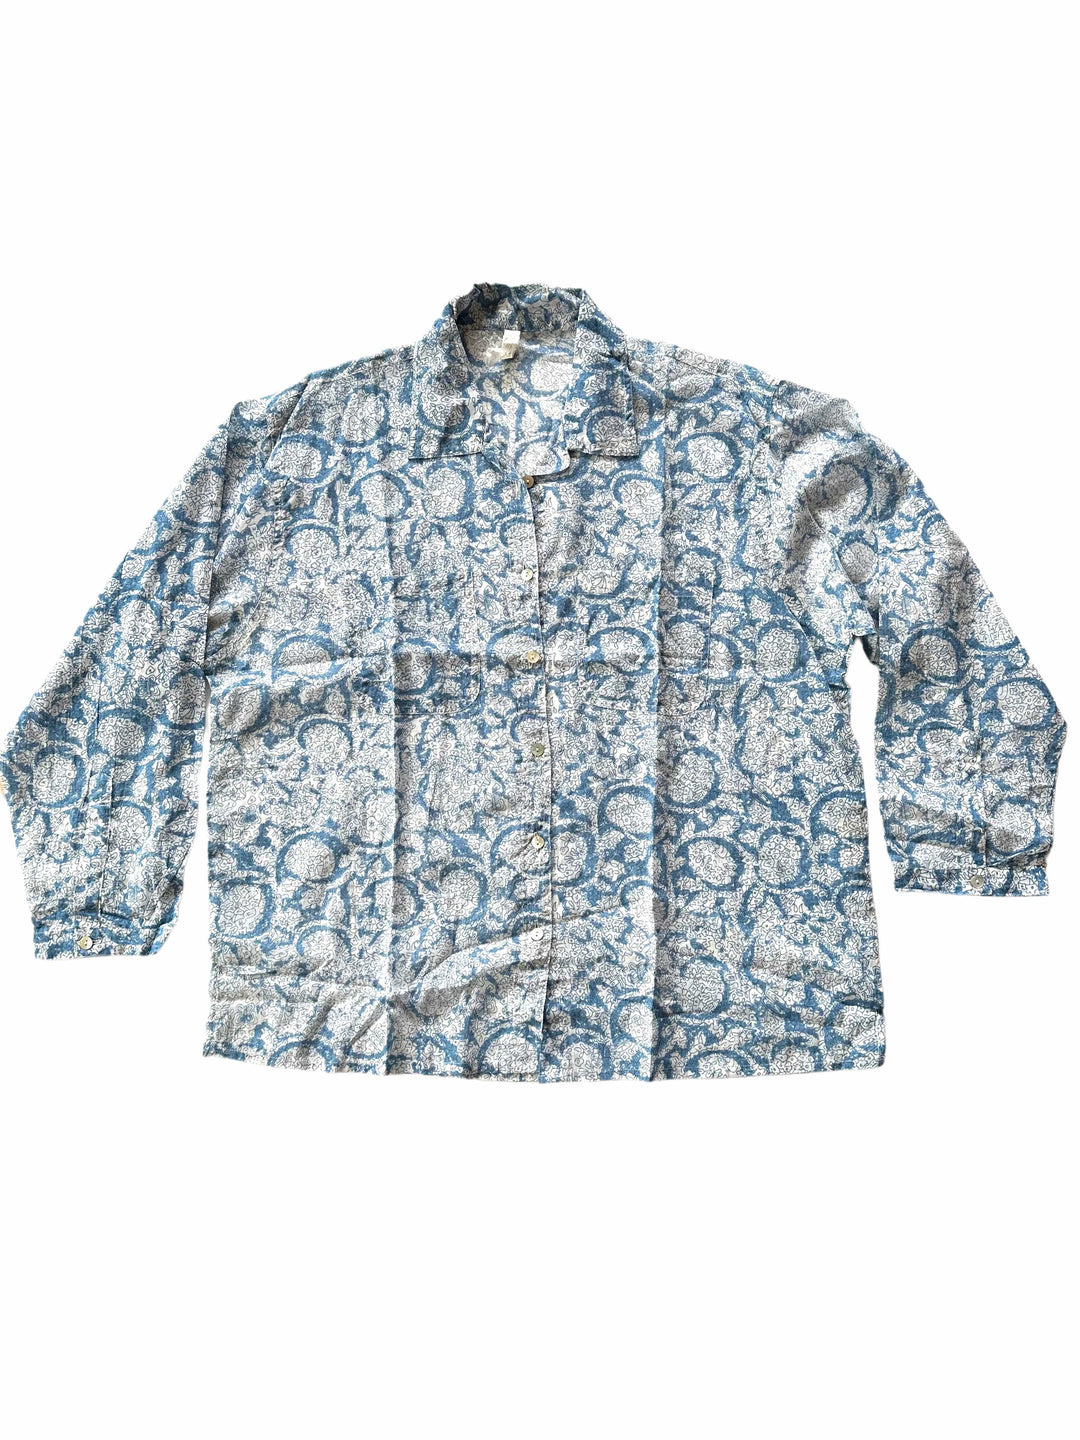 Beach Shirt - Blue Floral